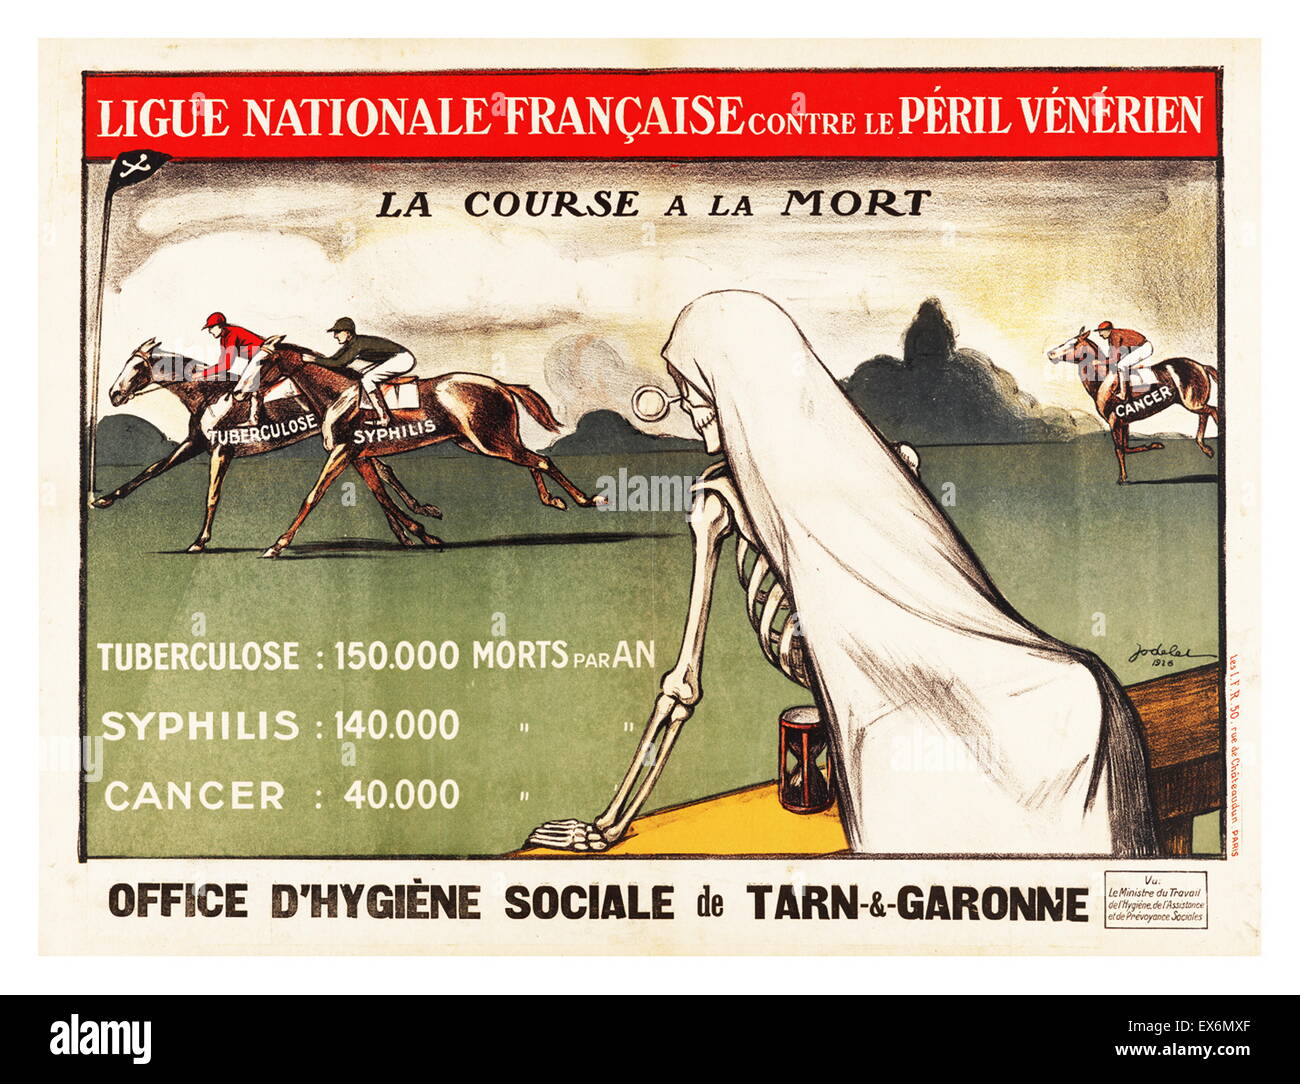 Ligue Nationale Française Contre le Peril Vénérién, Frankreich, ca. 1926. Tod-Uhren ein Vollblut-Rennen von tödlichen Krankheiten. Die folgenden Statistiken vergleichen die jährlichen Sterblichkeitsraten von Tuberkulose, Syphilis und Krebs Stockfoto